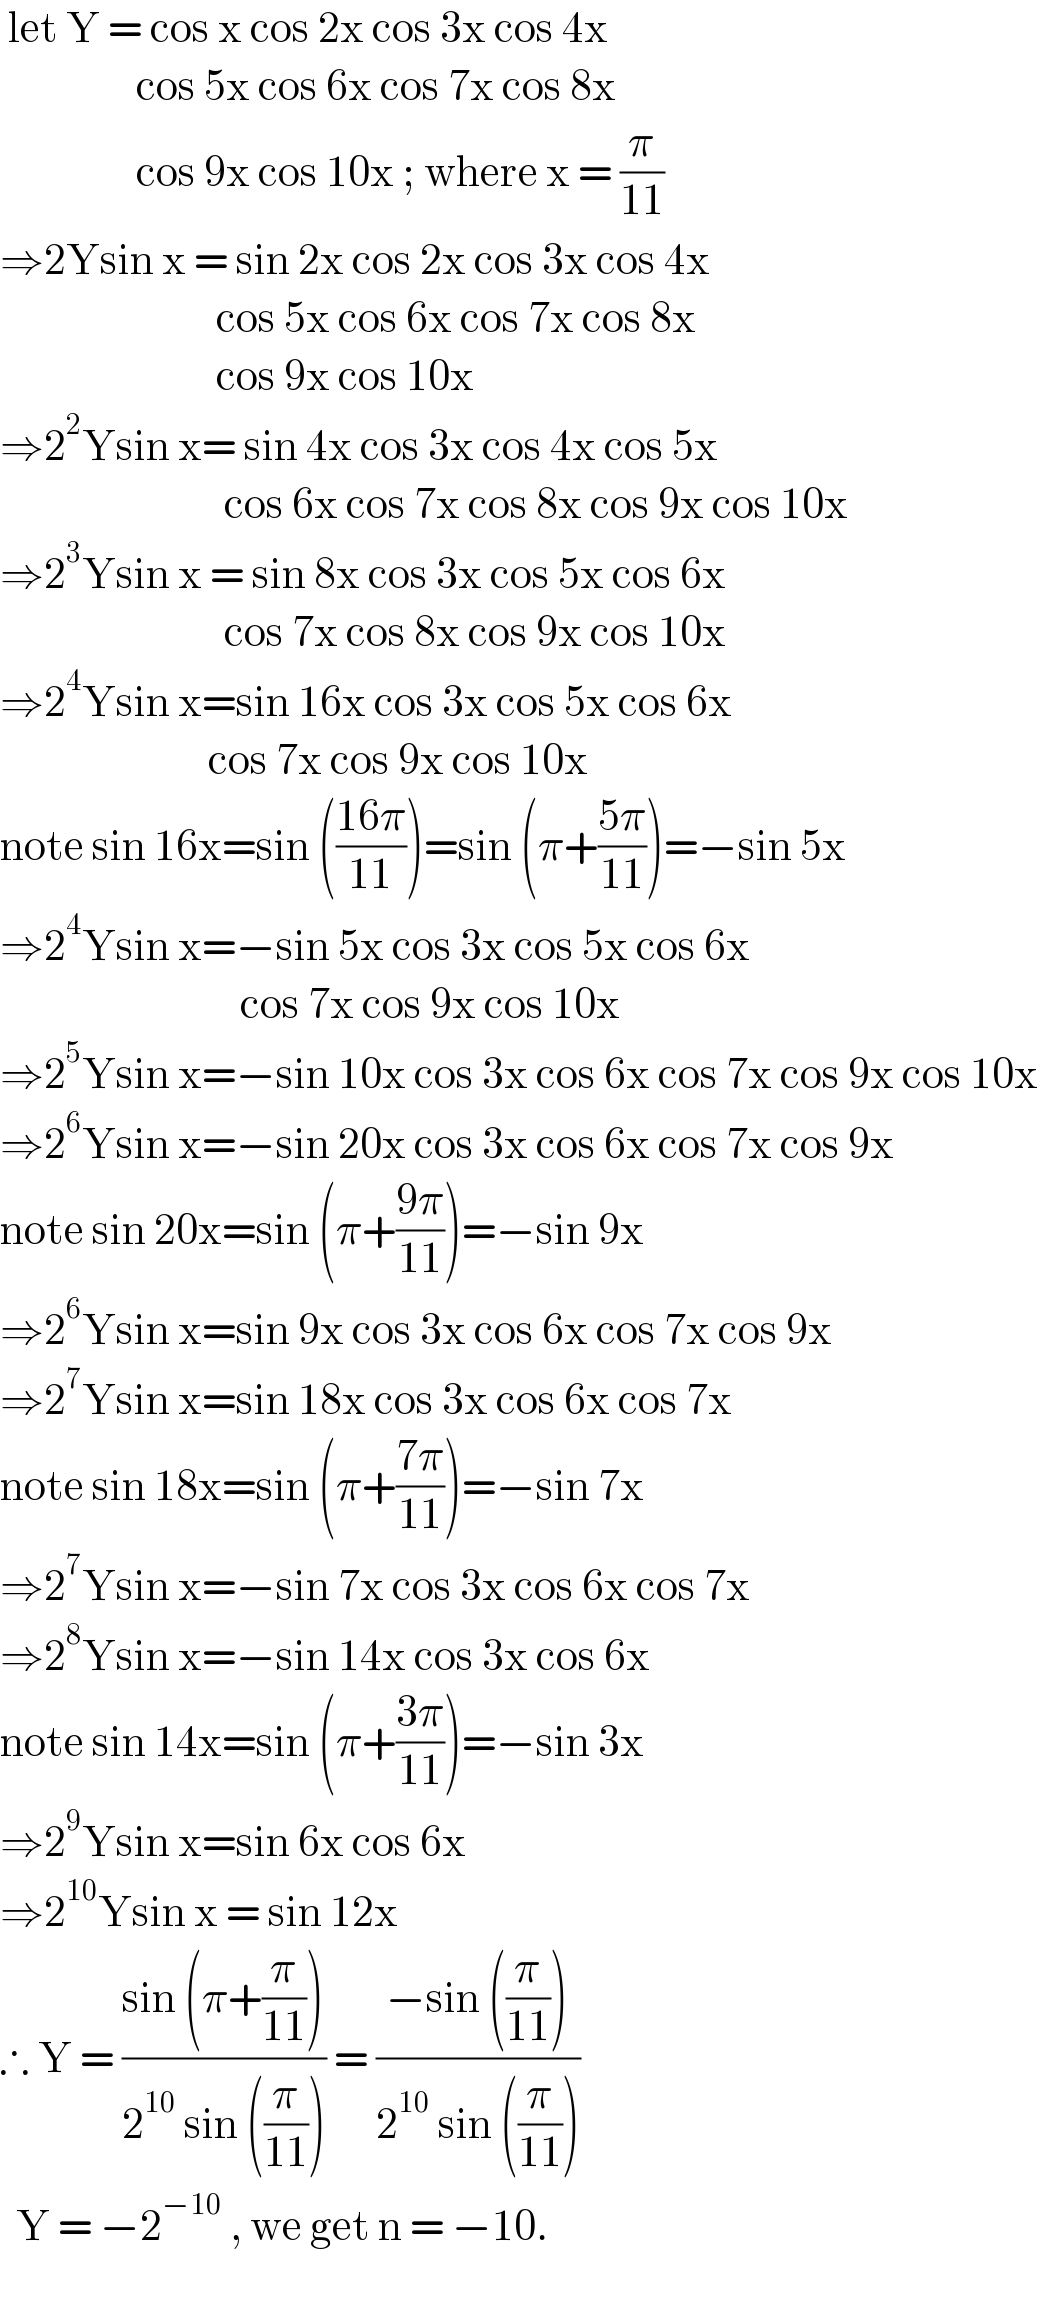  let Y = cos x cos 2x cos 3x cos 4x                    cos 5x cos 6x cos 7x cos 8x                    cos 9x cos 10x ; where x = (π/(11))  ⇒2Ysin x = sin 2x cos 2x cos 3x cos 4x                              cos 5x cos 6x cos 7x cos 8x                             cos 9x cos 10x  ⇒2^2 Ysin x= sin 4x cos 3x cos 4x cos 5x                              cos 6x cos 7x cos 8x cos 9x cos 10x  ⇒2^3 Ysin x = sin 8x cos 3x cos 5x cos 6x                              cos 7x cos 8x cos 9x cos 10x  ⇒2^4 Ysin x=sin 16x cos 3x cos 5x cos 6x                            cos 7x cos 9x cos 10x  note sin 16x=sin (((16π)/(11)))=sin (π+((5π)/(11)))=−sin 5x  ⇒2^4 Ysin x=−sin 5x cos 3x cos 5x cos 6x                                cos 7x cos 9x cos 10x  ⇒2^5 Ysin x=−sin 10x cos 3x cos 6x cos 7x cos 9x cos 10x  ⇒2^6 Ysin x=−sin 20x cos 3x cos 6x cos 7x cos 9x  note sin 20x=sin (π+((9π)/(11)))=−sin 9x  ⇒2^6 Ysin x=sin 9x cos 3x cos 6x cos 7x cos 9x  ⇒2^7 Ysin x=sin 18x cos 3x cos 6x cos 7x   note sin 18x=sin (π+((7π)/(11)))=−sin 7x  ⇒2^7 Ysin x=−sin 7x cos 3x cos 6x cos 7x  ⇒2^8 Ysin x=−sin 14x cos 3x cos 6x  note sin 14x=sin (π+((3π)/(11)))=−sin 3x  ⇒2^9 Ysin x=sin 6x cos 6x  ⇒2^(10) Ysin x = sin 12x  ∴ Y = ((sin (π+(π/(11))))/(2^(10)  sin ((π/(11))))) = ((−sin ((π/(11))))/(2^(10)  sin ((π/(11)))))    Y = −2^(−10)  , we get n = −10.                               